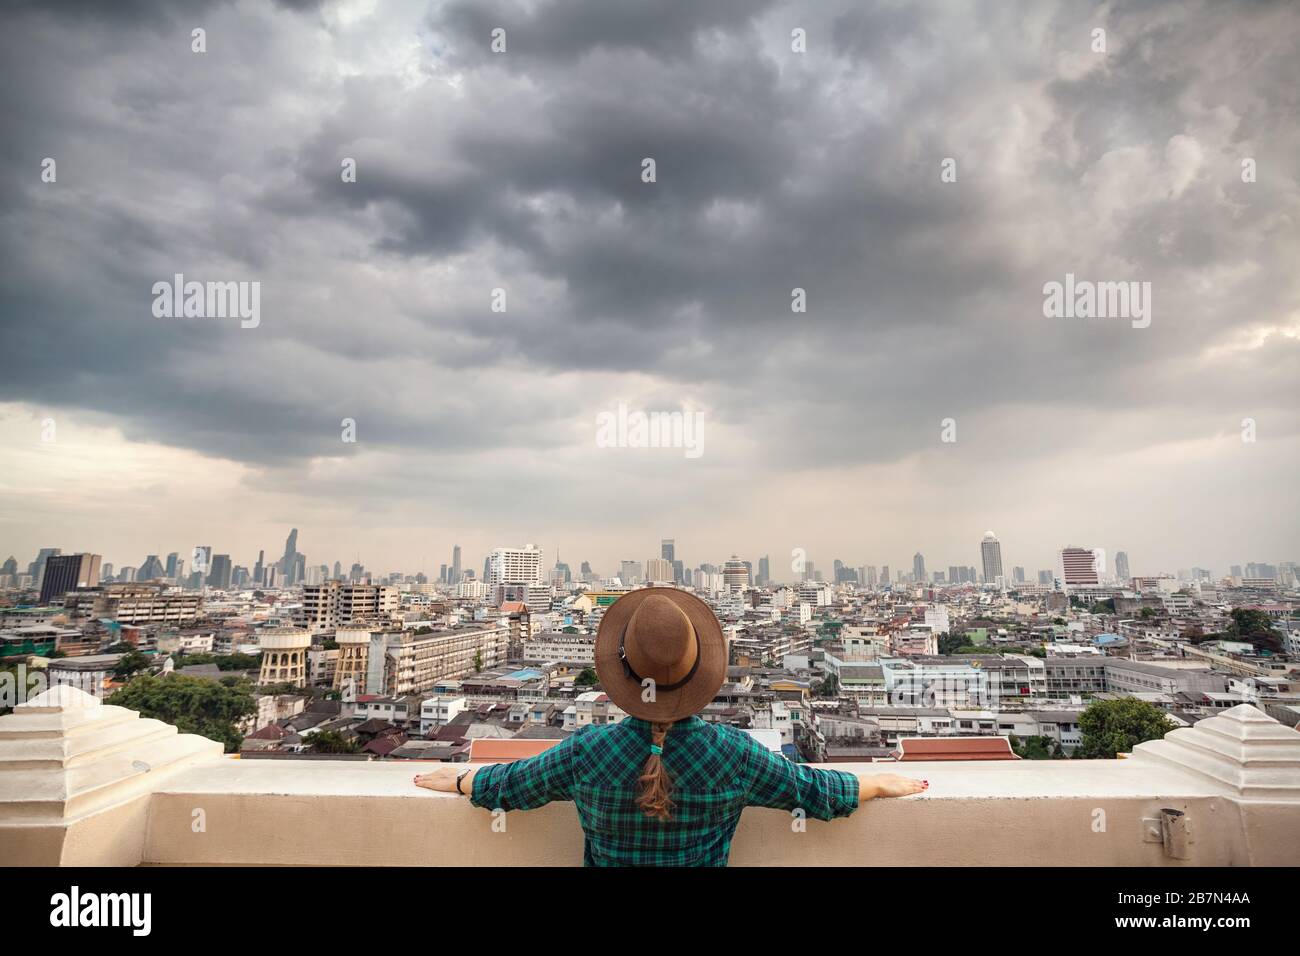 Tourist-Frau in Hut und grün kariertes Hemd Blick auf Bangkok City Panorama mit Wolkenkratzern des Geschäftsviertels von Golden Mountain Wat Saket vie Stockfoto